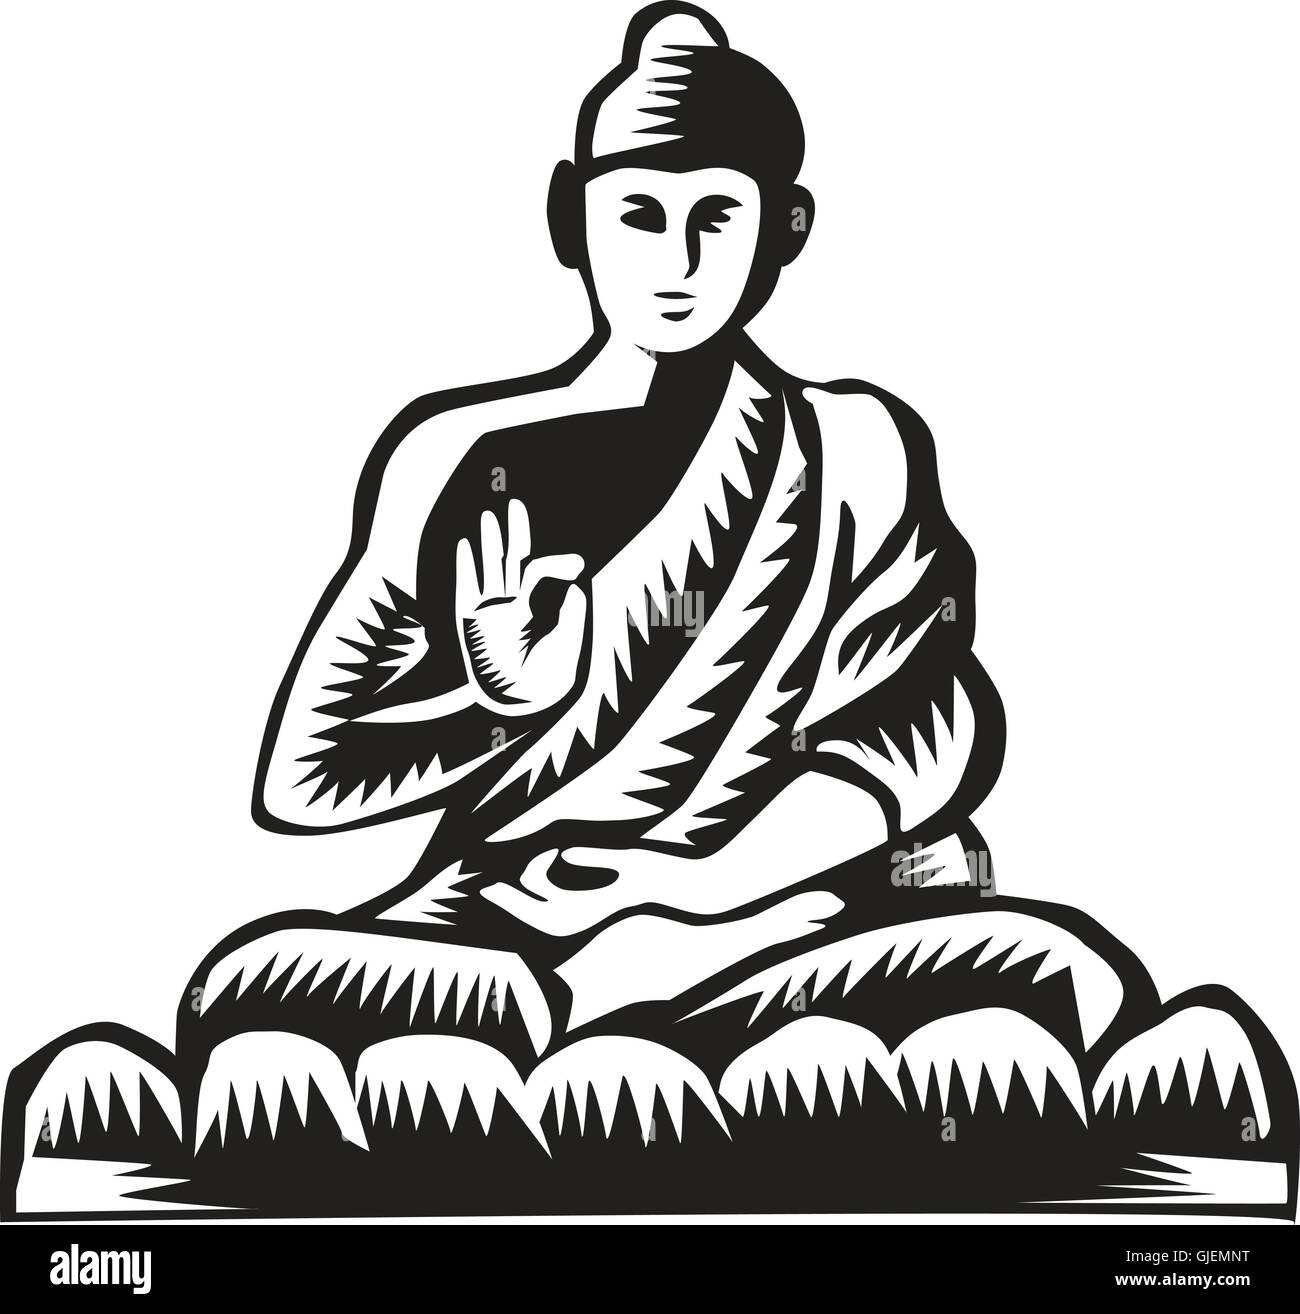 Illustrazione di un Gautama Buddha, Siddhārtha Gautama, Buddha Shakyamuni nella posizione del loto, visto dal lato anteriore impostato su isolato sfondo bianco fatto in xilografia retrò stile. Illustrazione Vettoriale